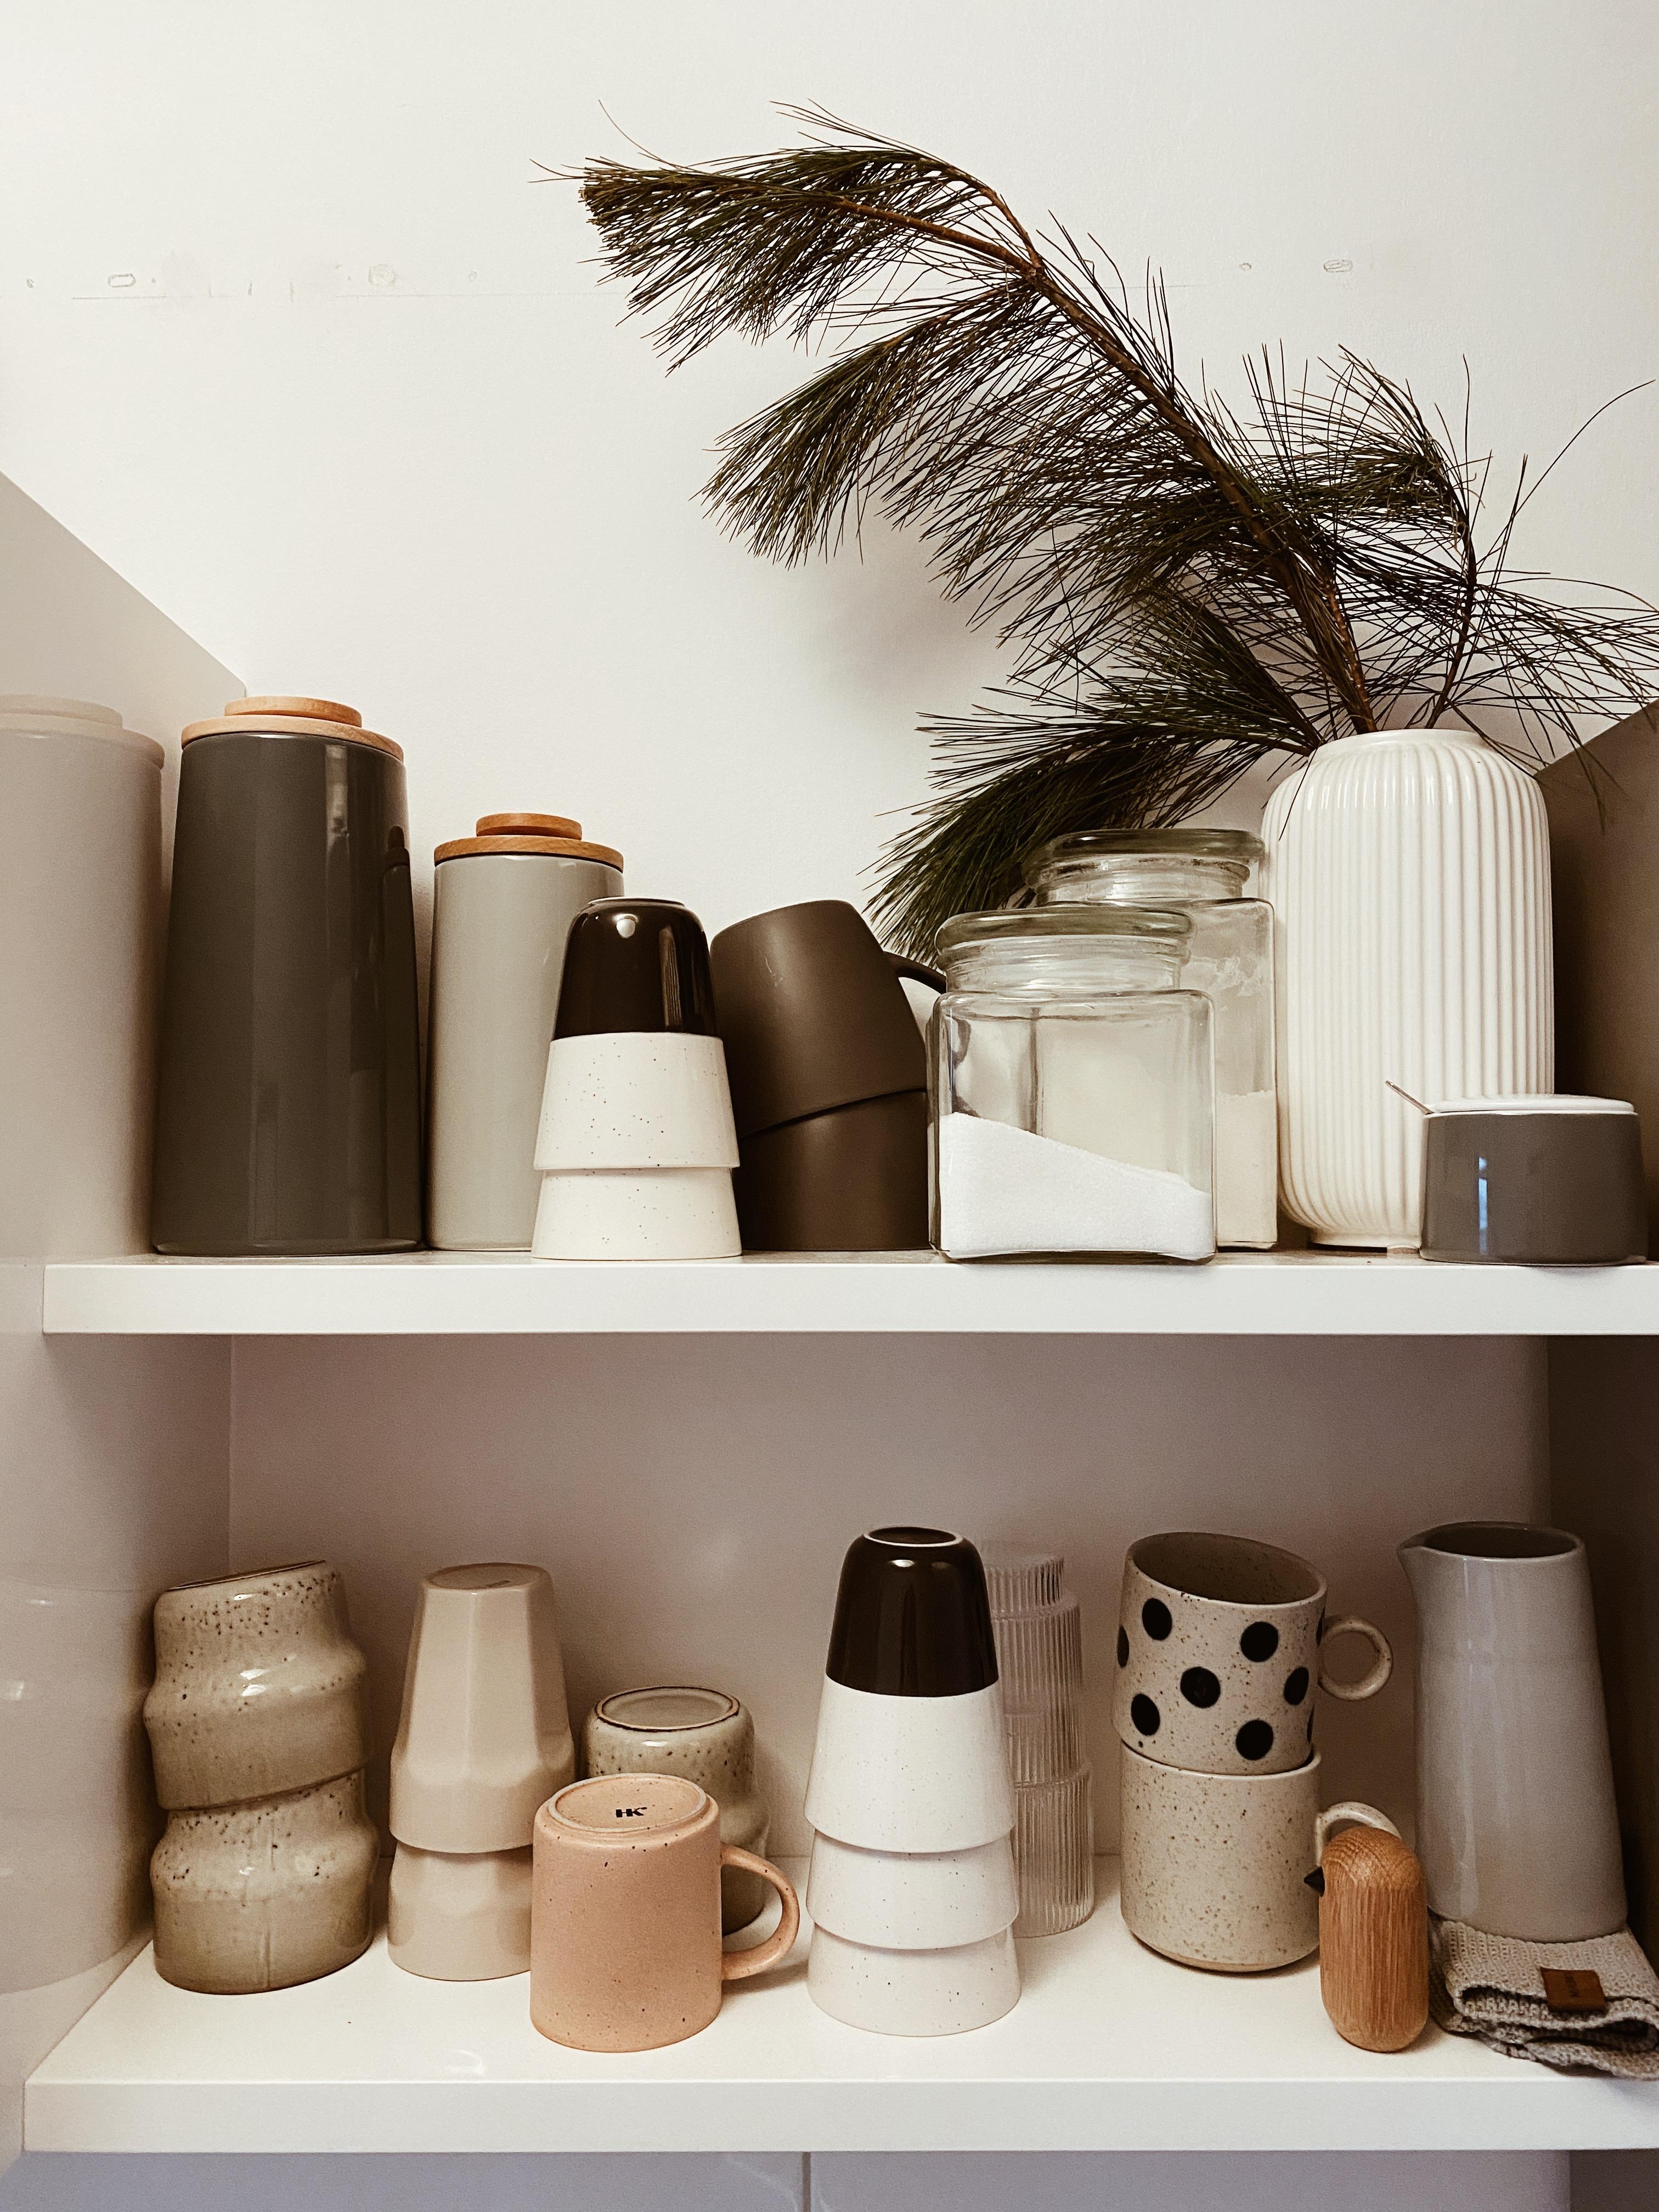 Tassenliebe 
#küche #mug #tasse #keramik #kitchen #interior #deko 